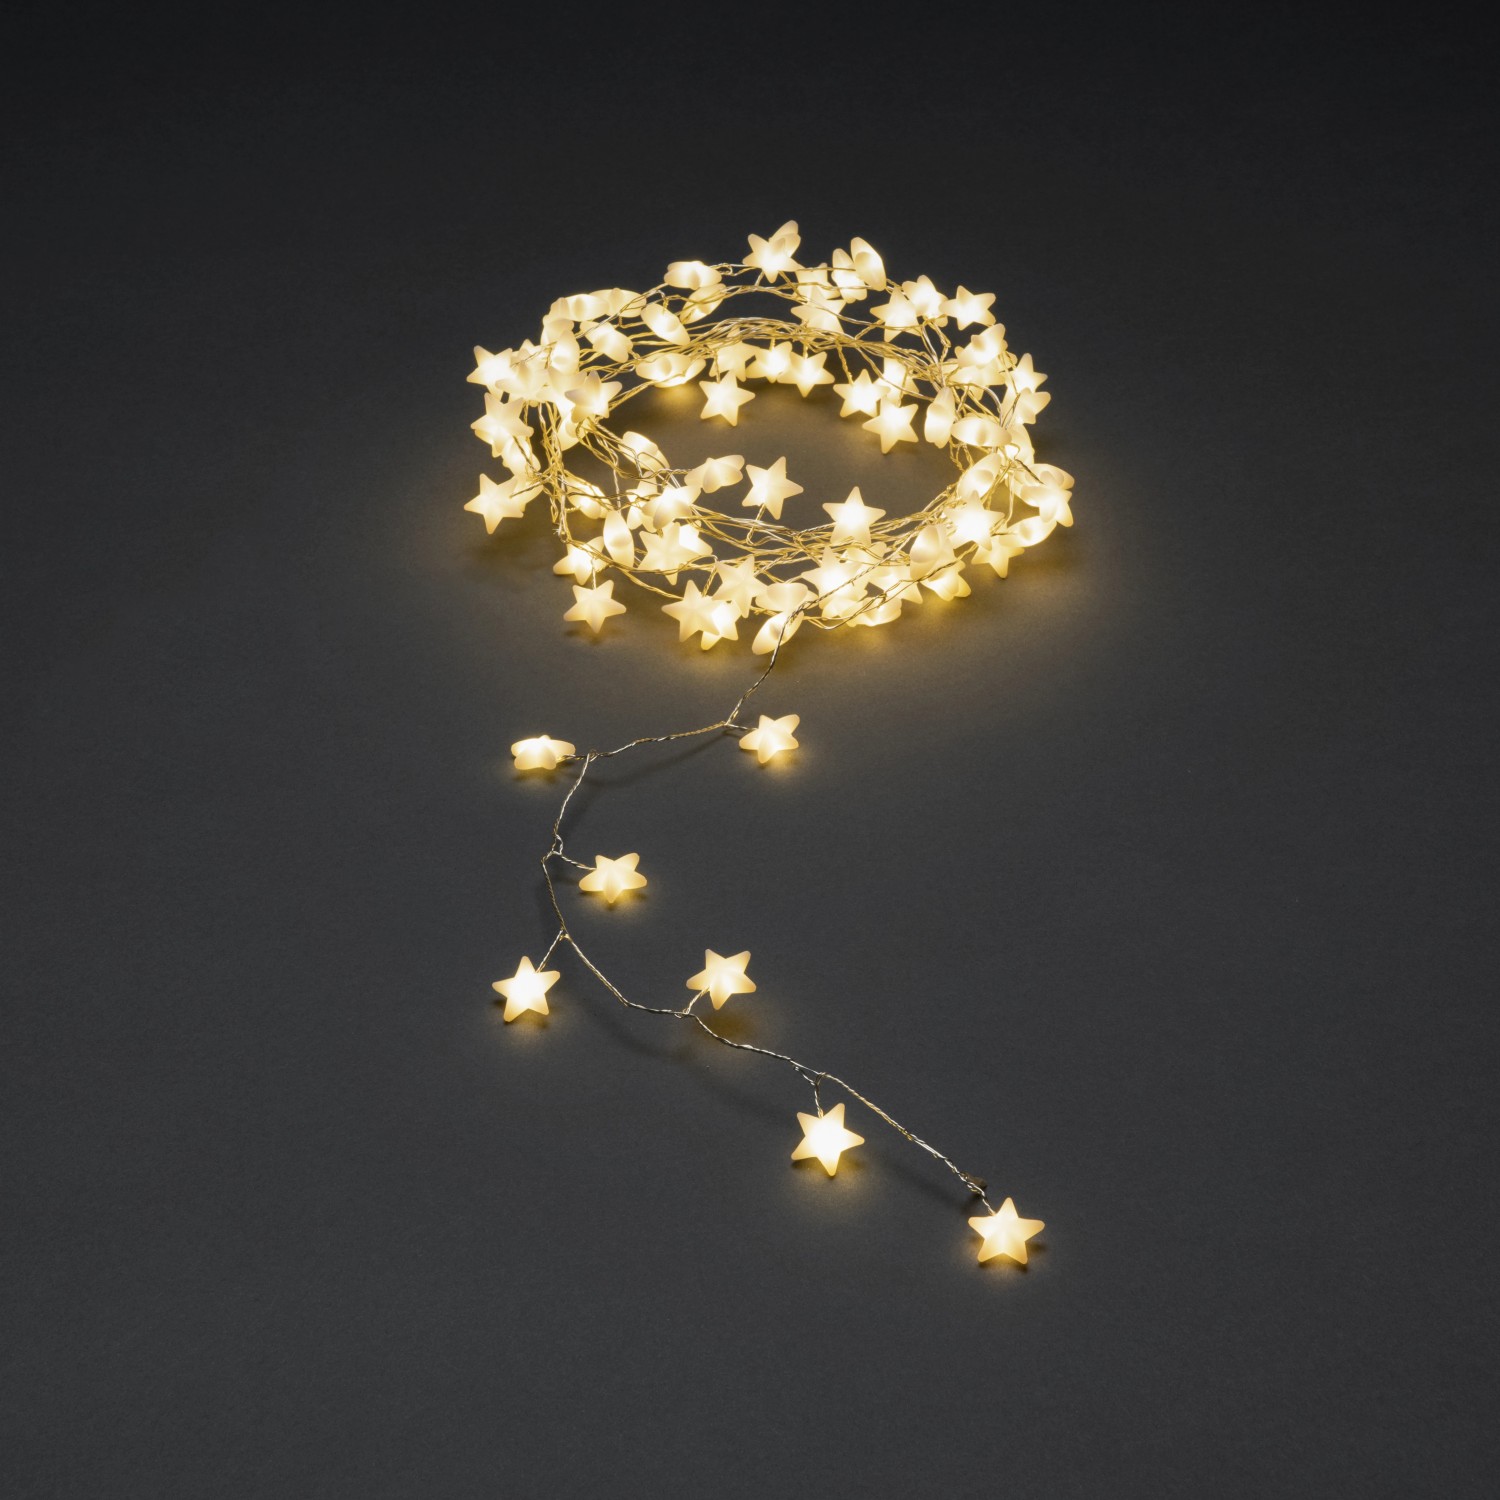 Konstsmide LED Sternenlichterkette 90 Warm-Weiße Dioden kaufen bei OBI | Lichterketten